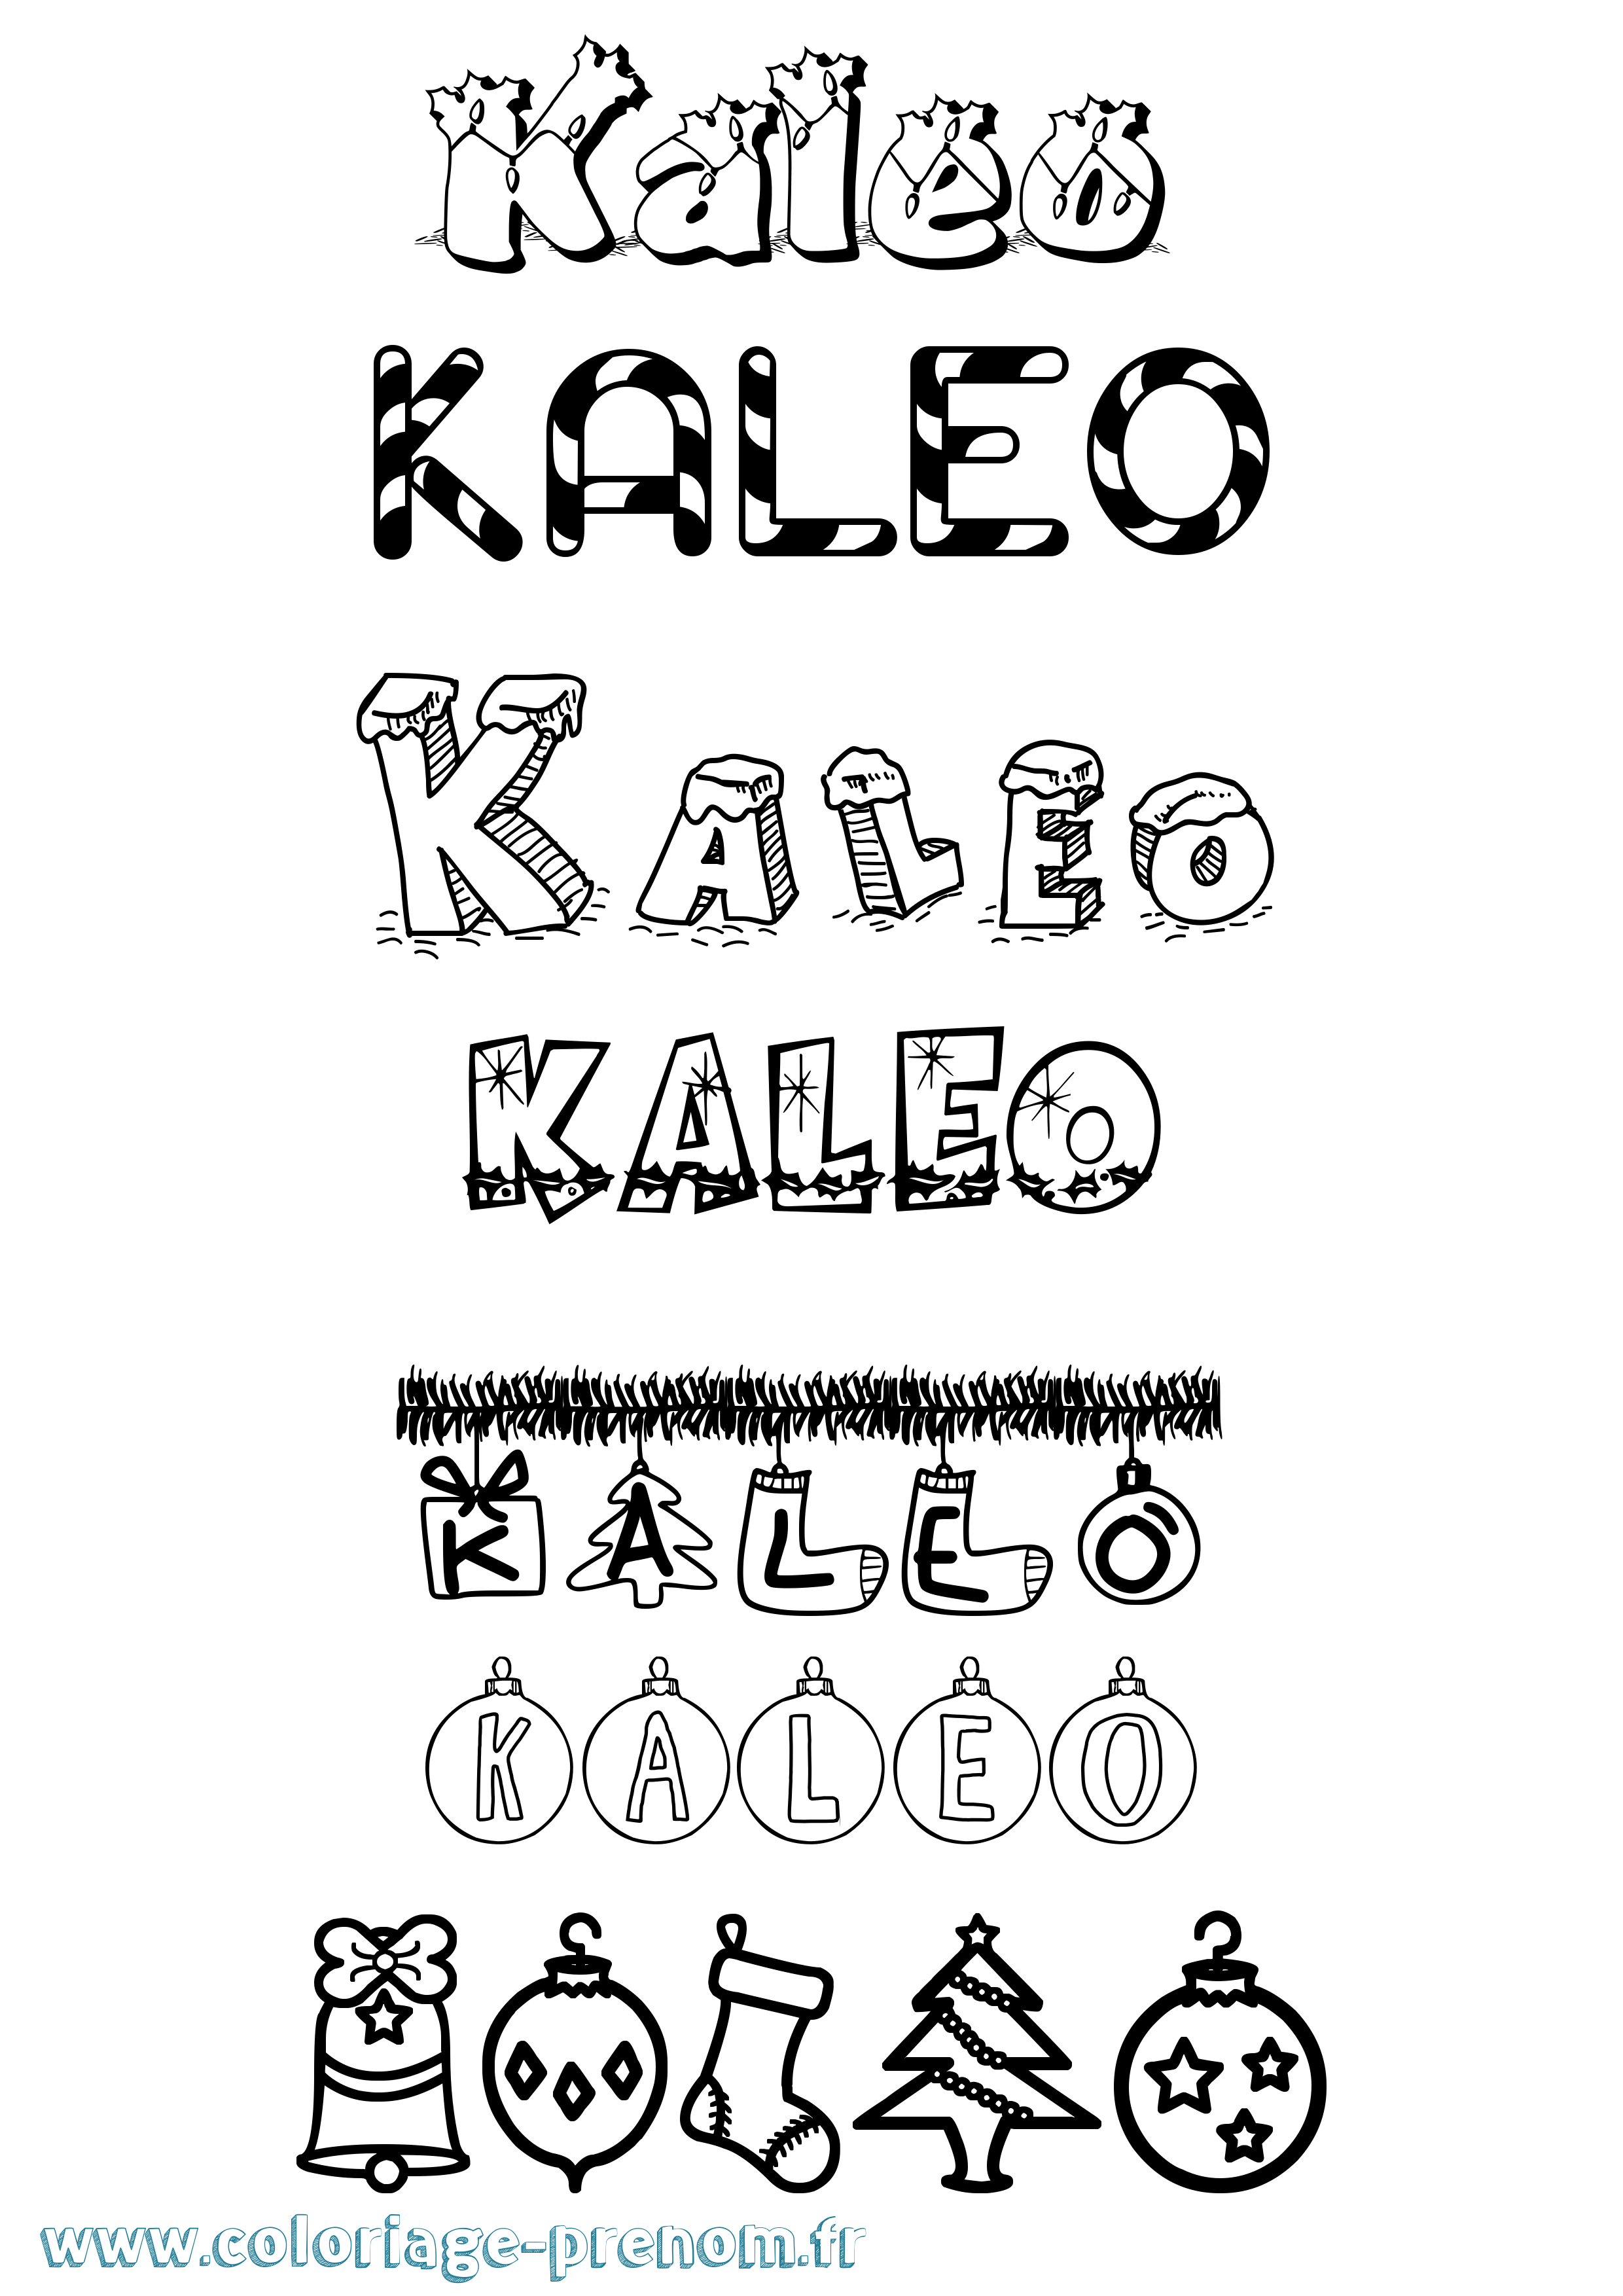 Coloriage prénom Kaleo Noël